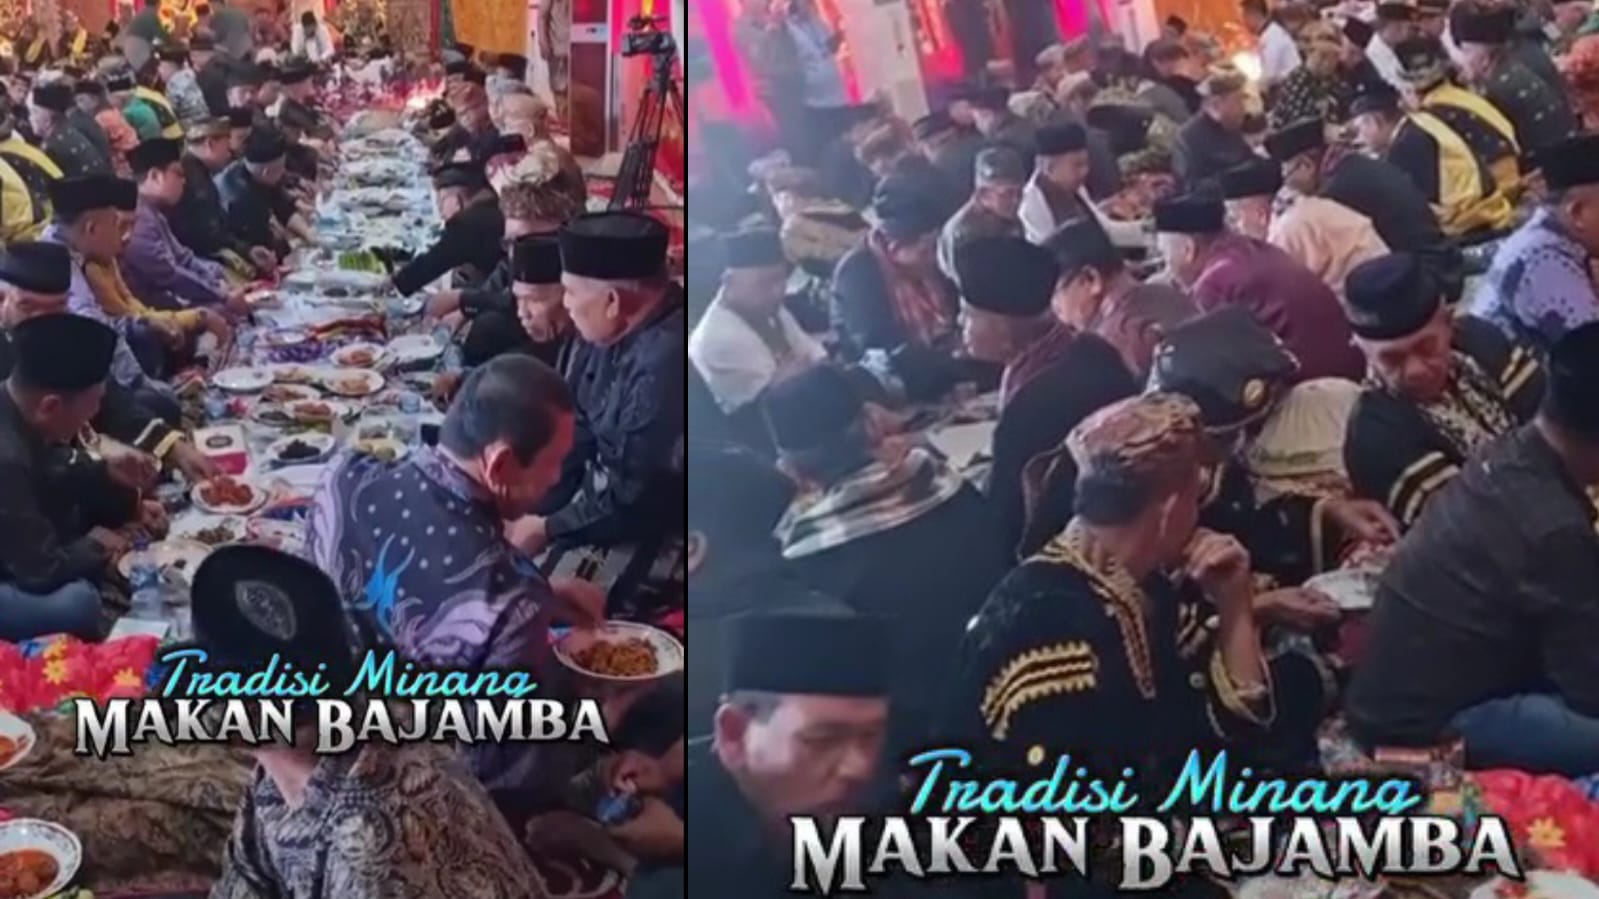 Makan Bajamba Tradisi Unik di Minangkabau yang Penuh Makna, Banyak Pesan Tersirat di Dalamnya